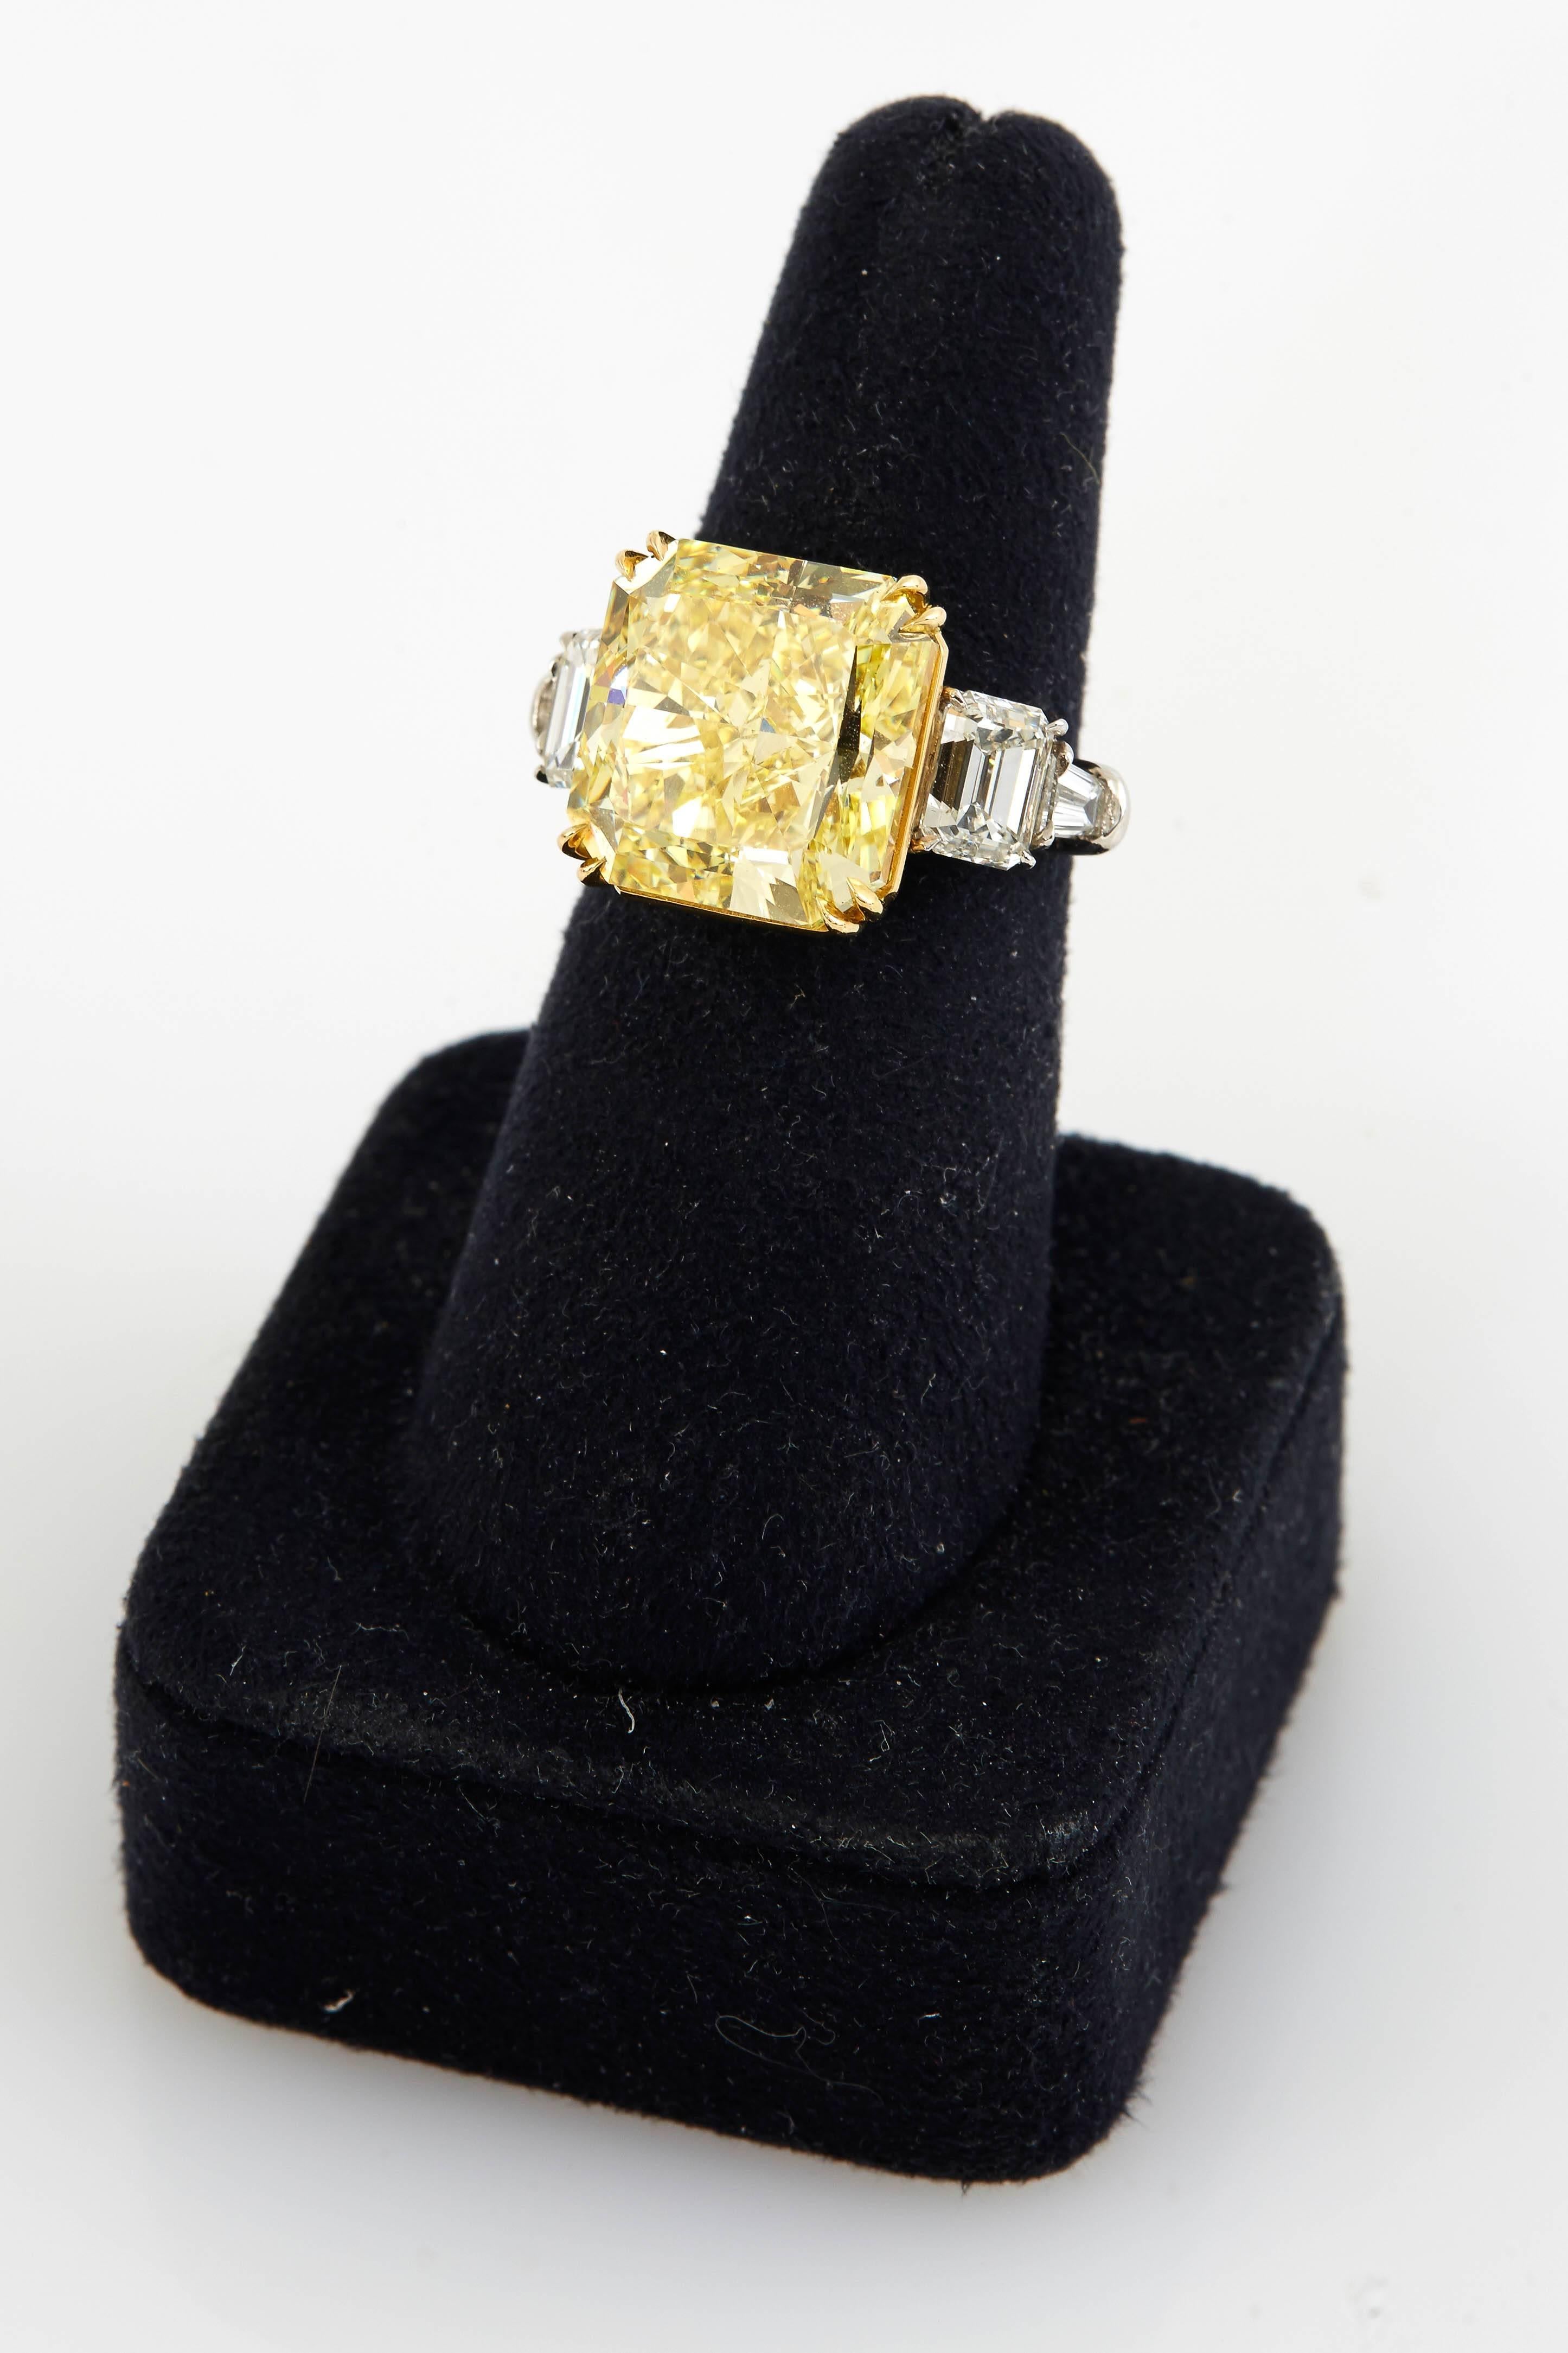 Women's or Men's GIA Certified 15.37 Carat Natural Fancy Intense Yellow Diamond Ring